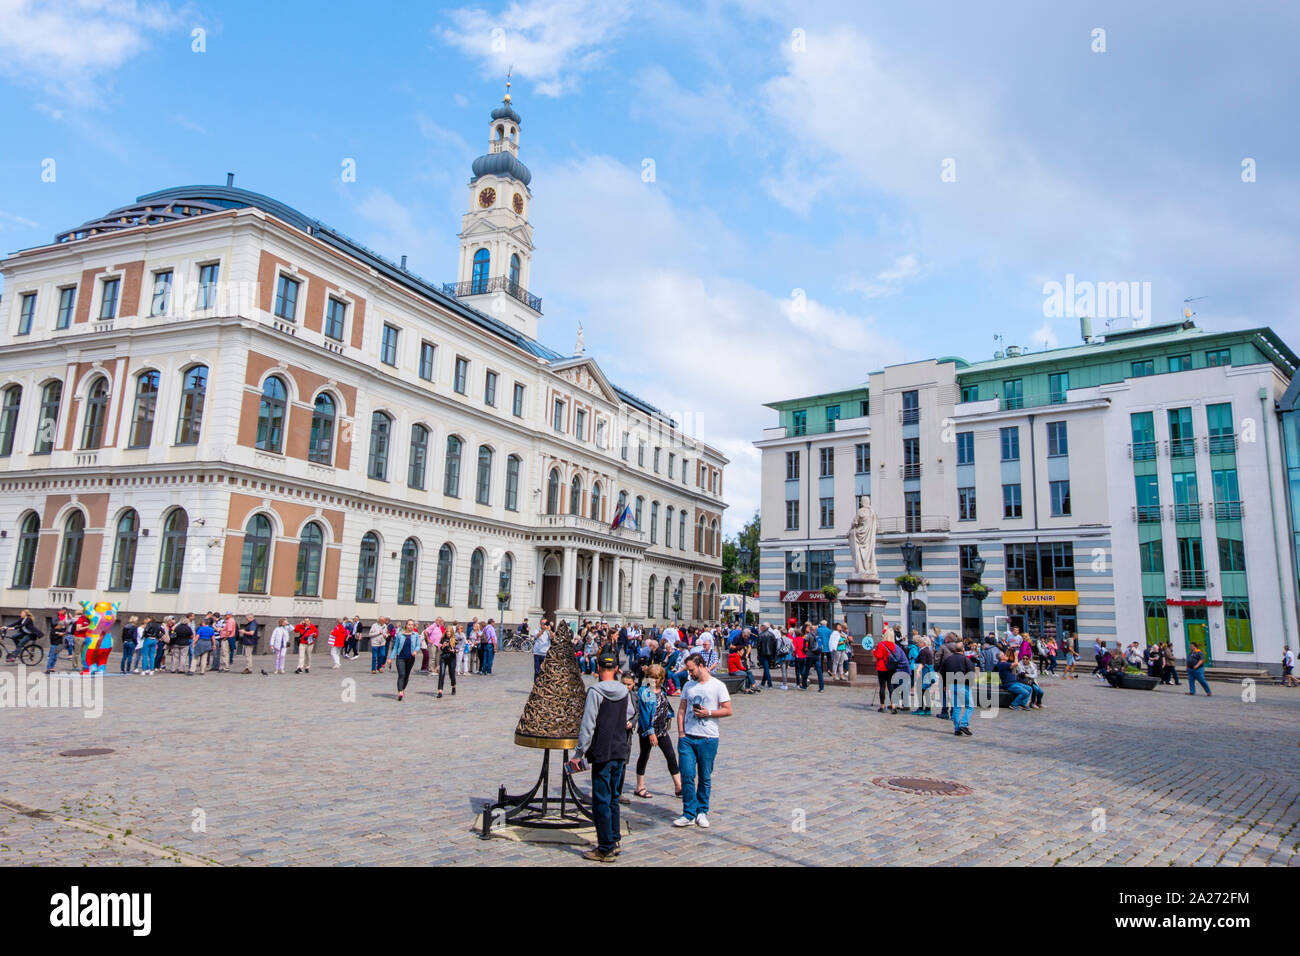 Ratslaukums, vieille ville, Riga, Lettonie Banque D'Images